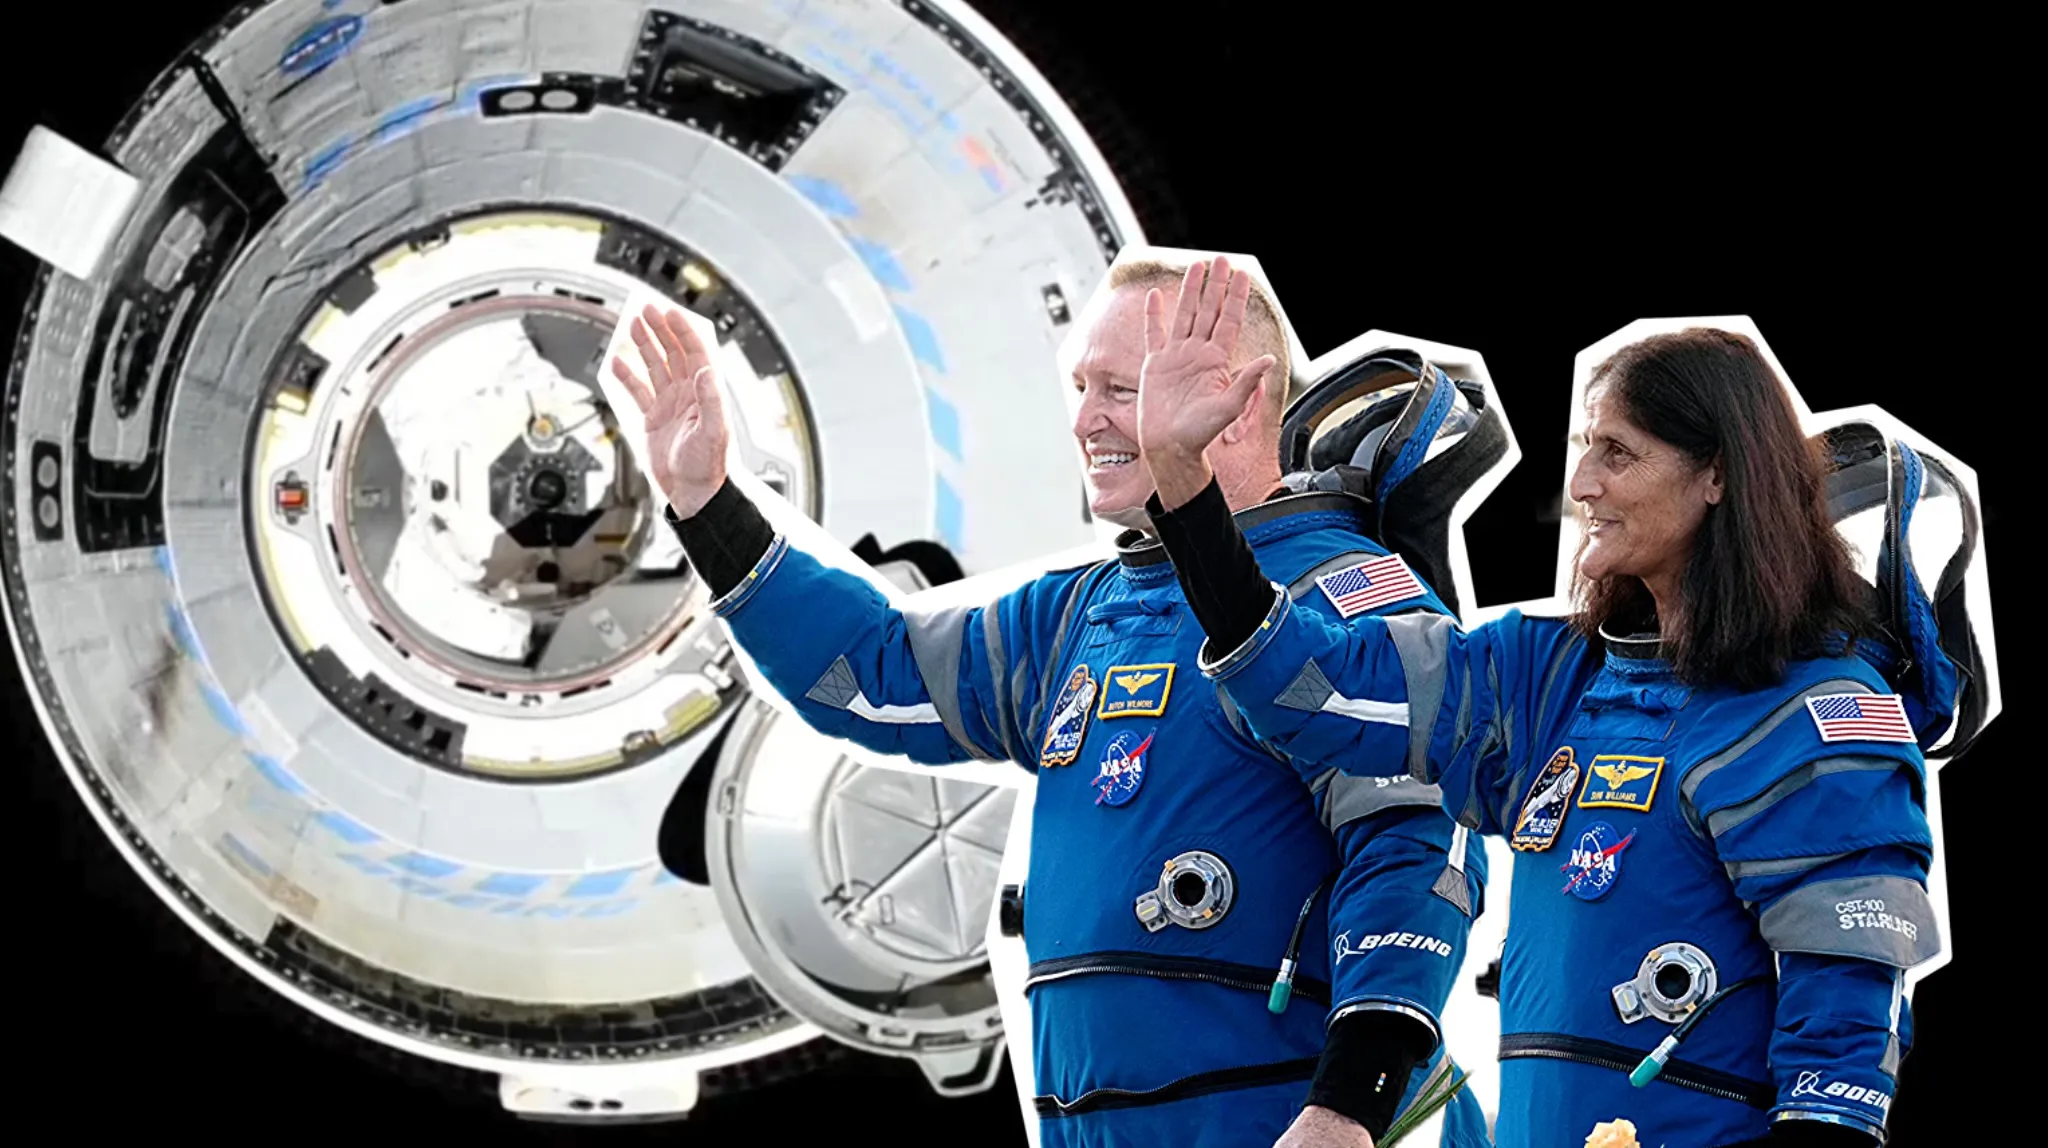 Застрявшие в космосе: Что делают для возвращения на Землю астронавтов с многострадального Starliner